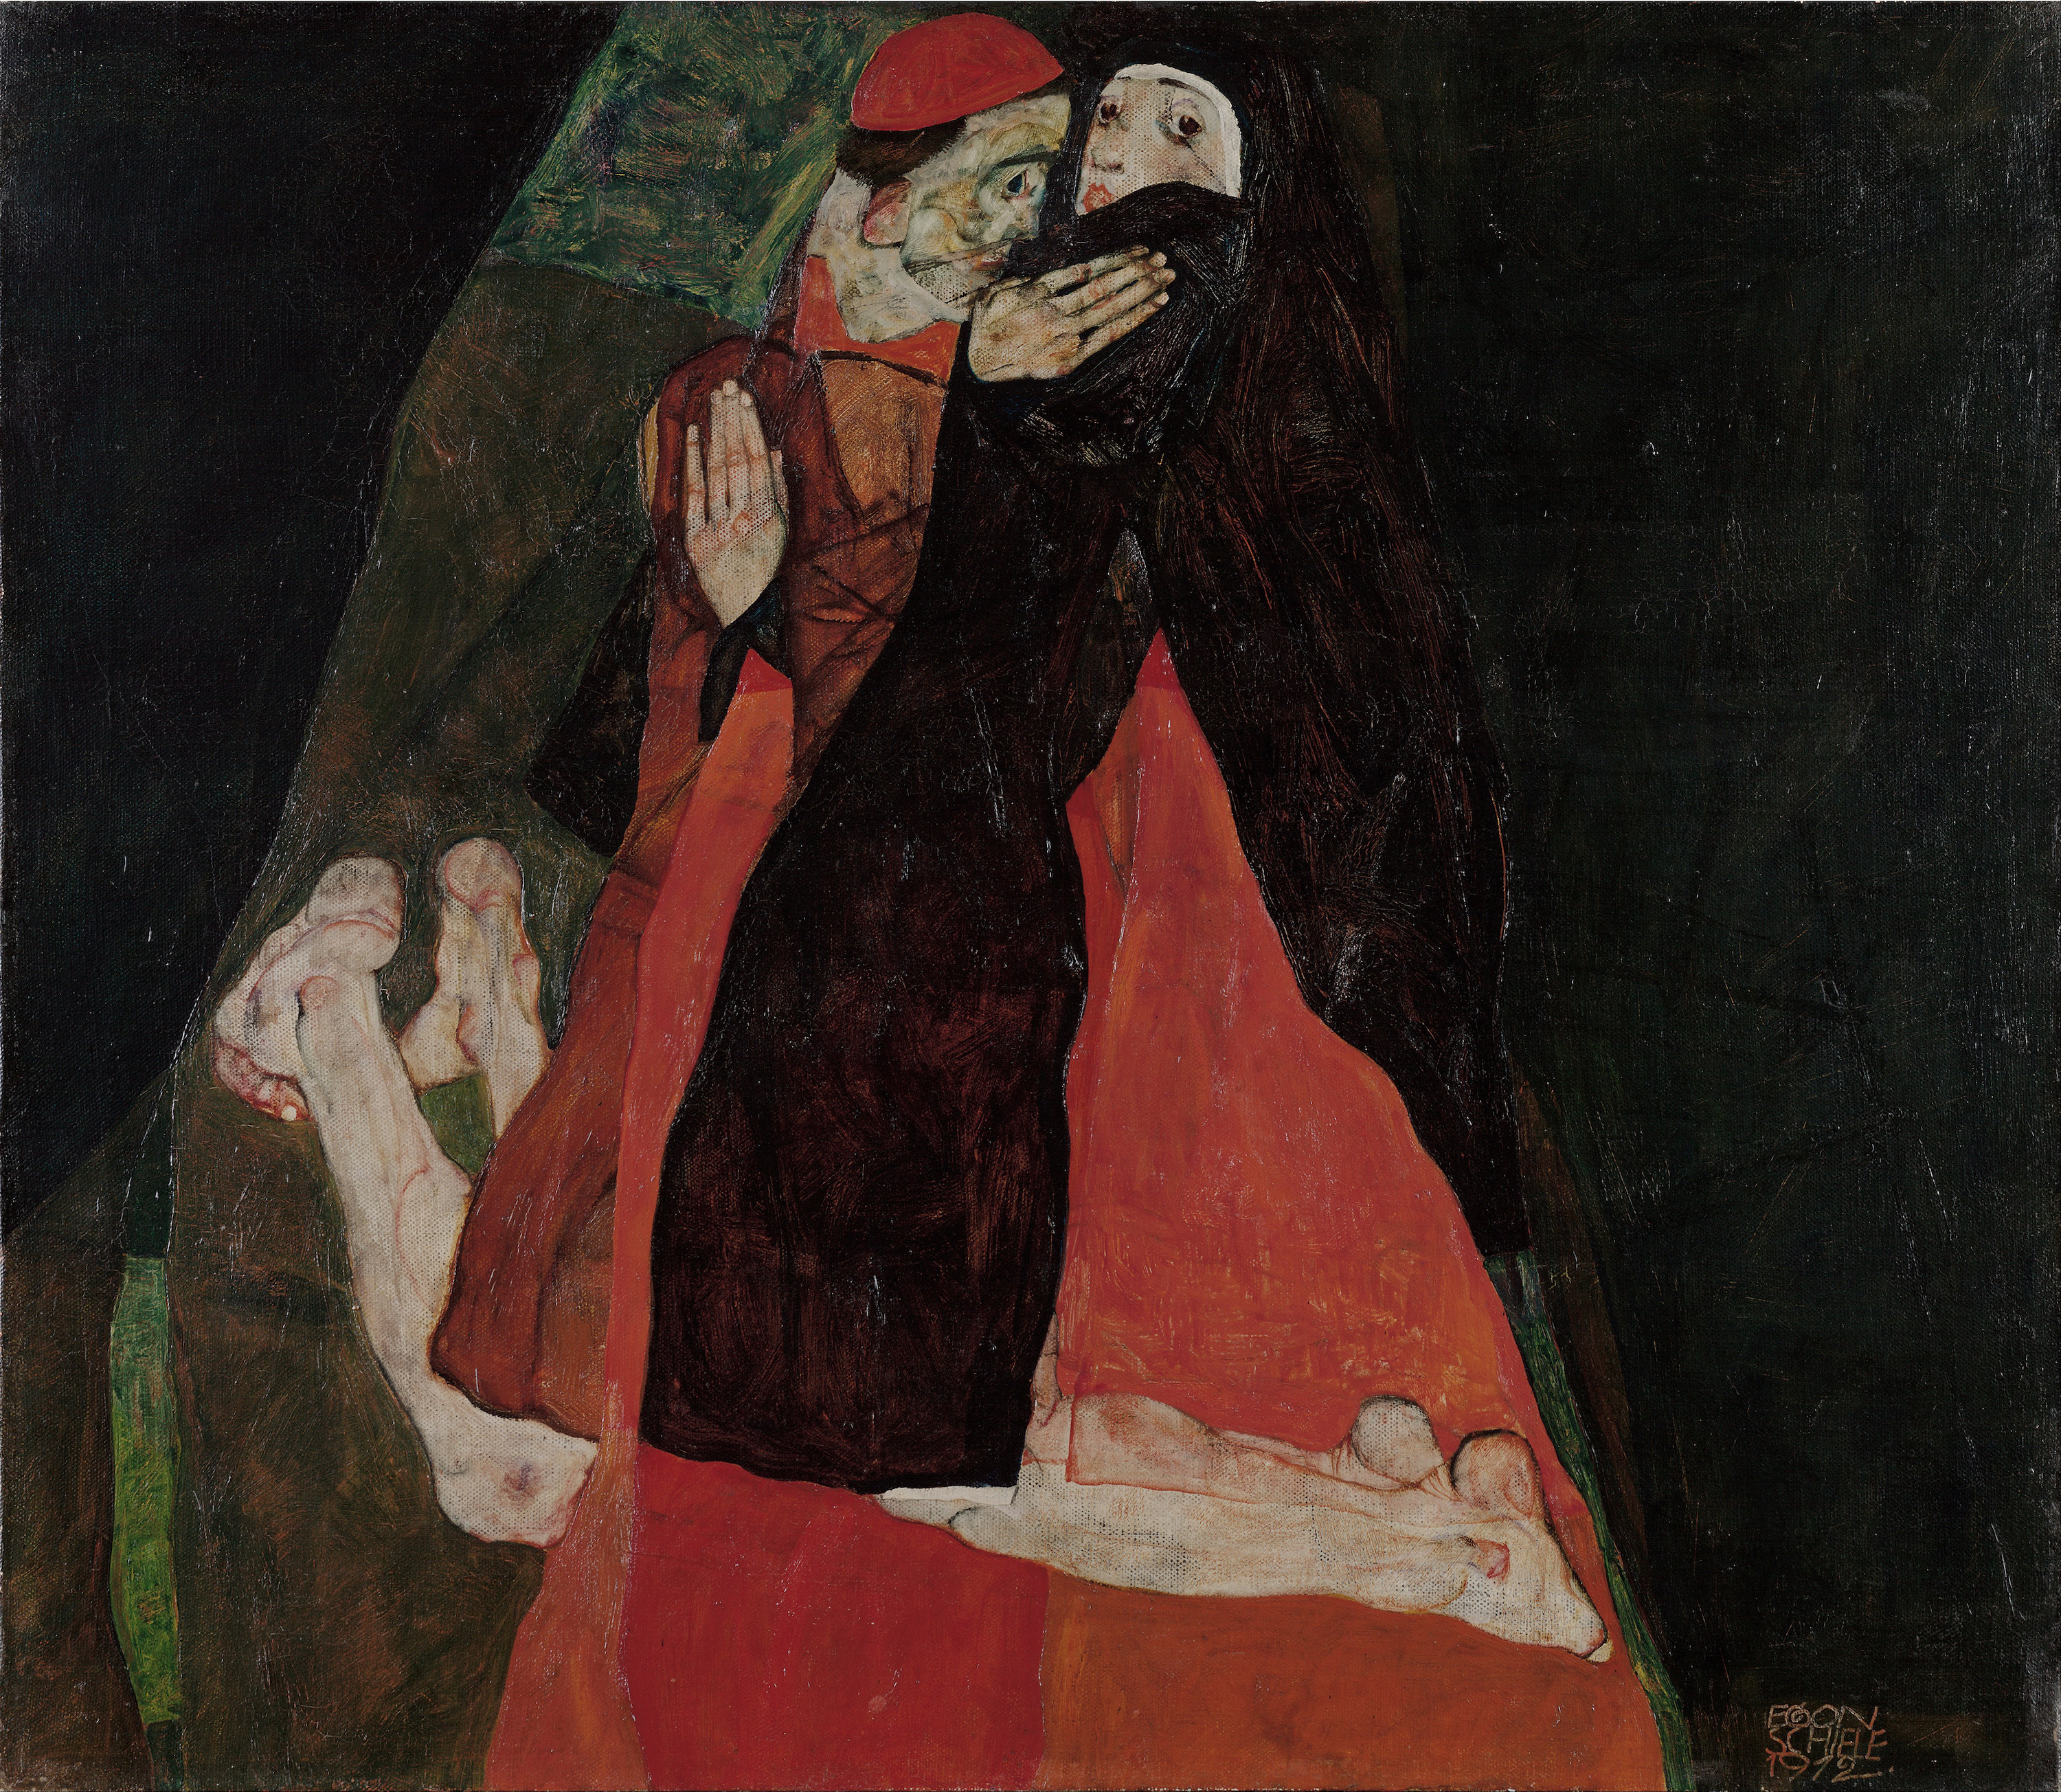 紅衣主教和修女（愛撫） by Egon Schiele - 1912 - 80.5 x 70 cm 